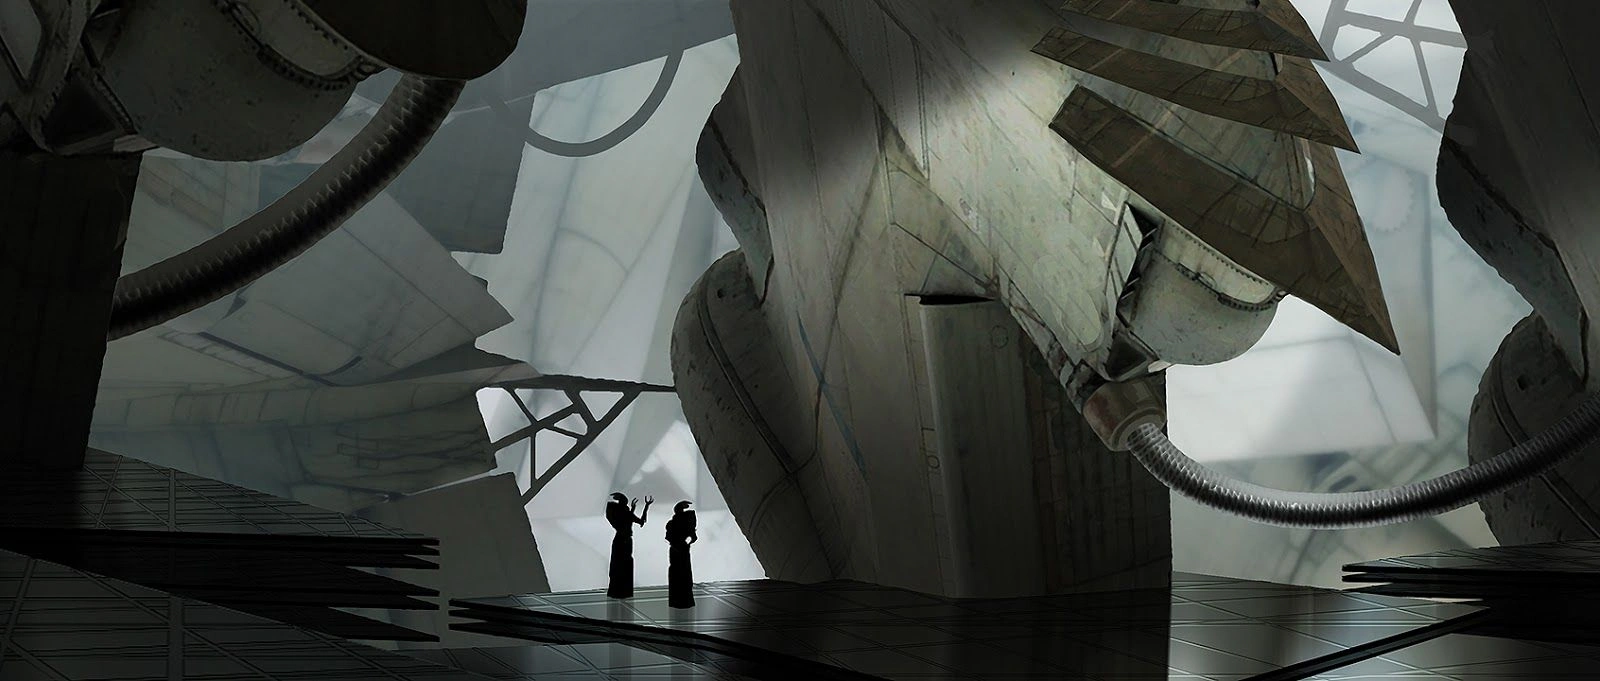 [Mass Effect] Концептуальный рисунок: Турианская архитектура.